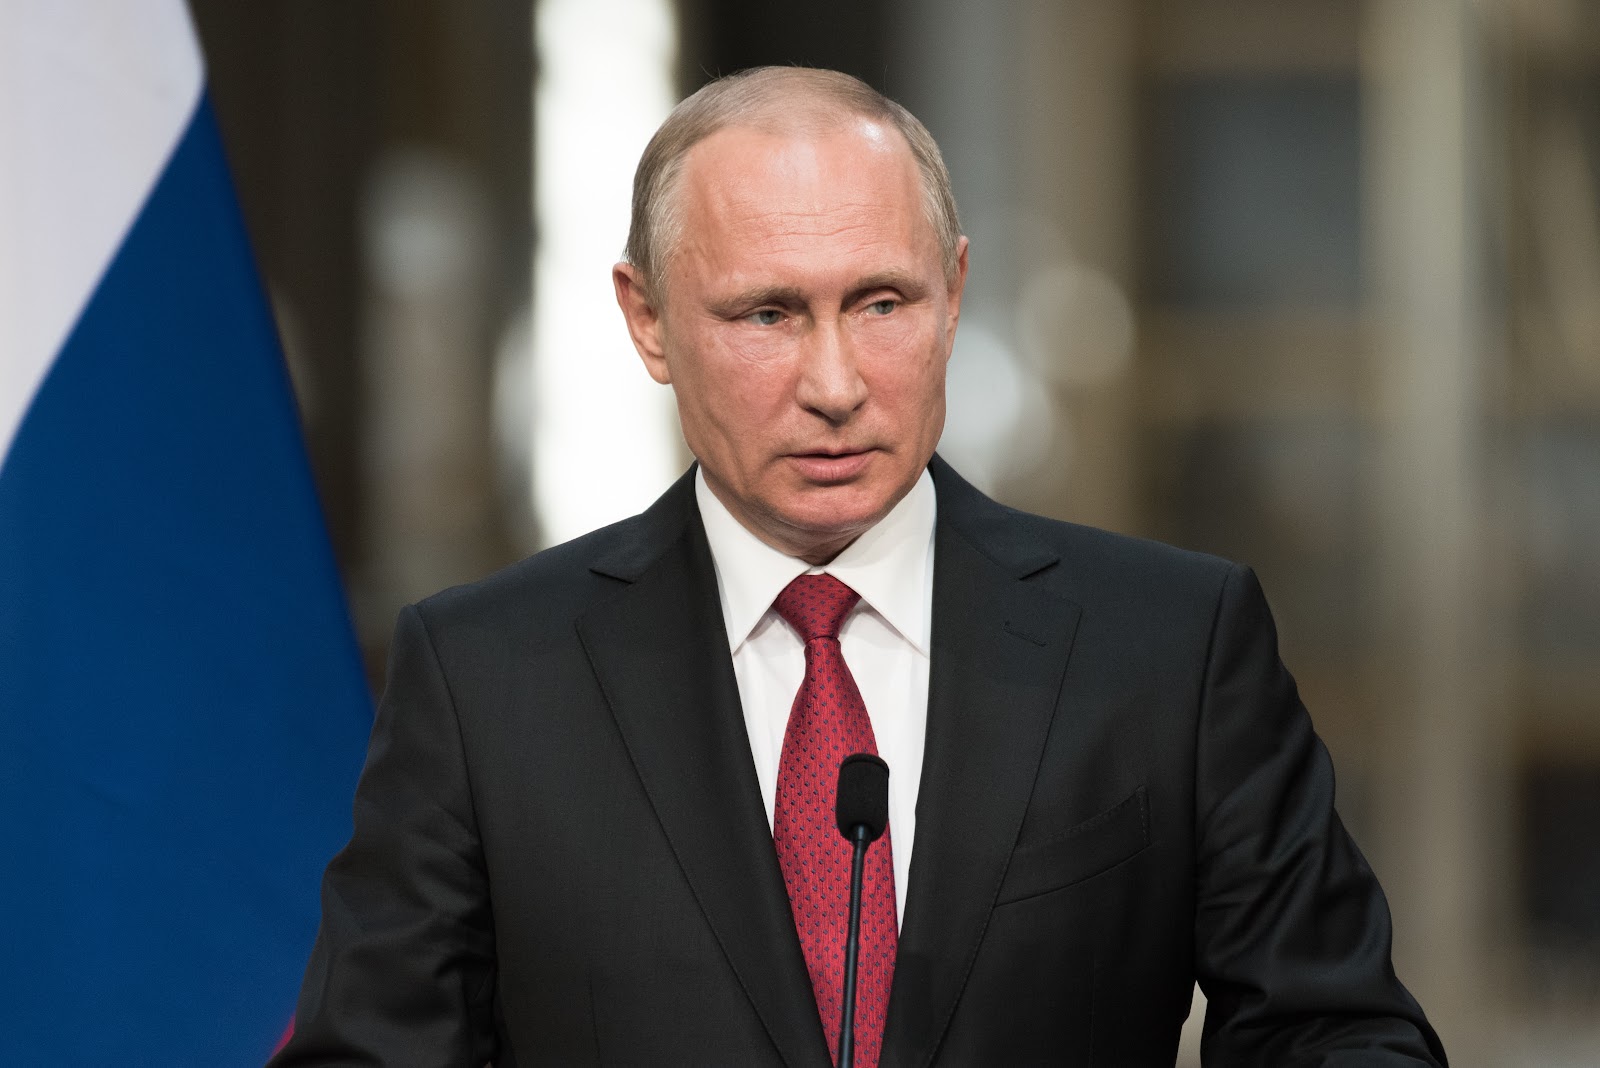 Putin aperto al dialogo sull’Ucraina: ‘Cercando una soluzione globale e pacifica’